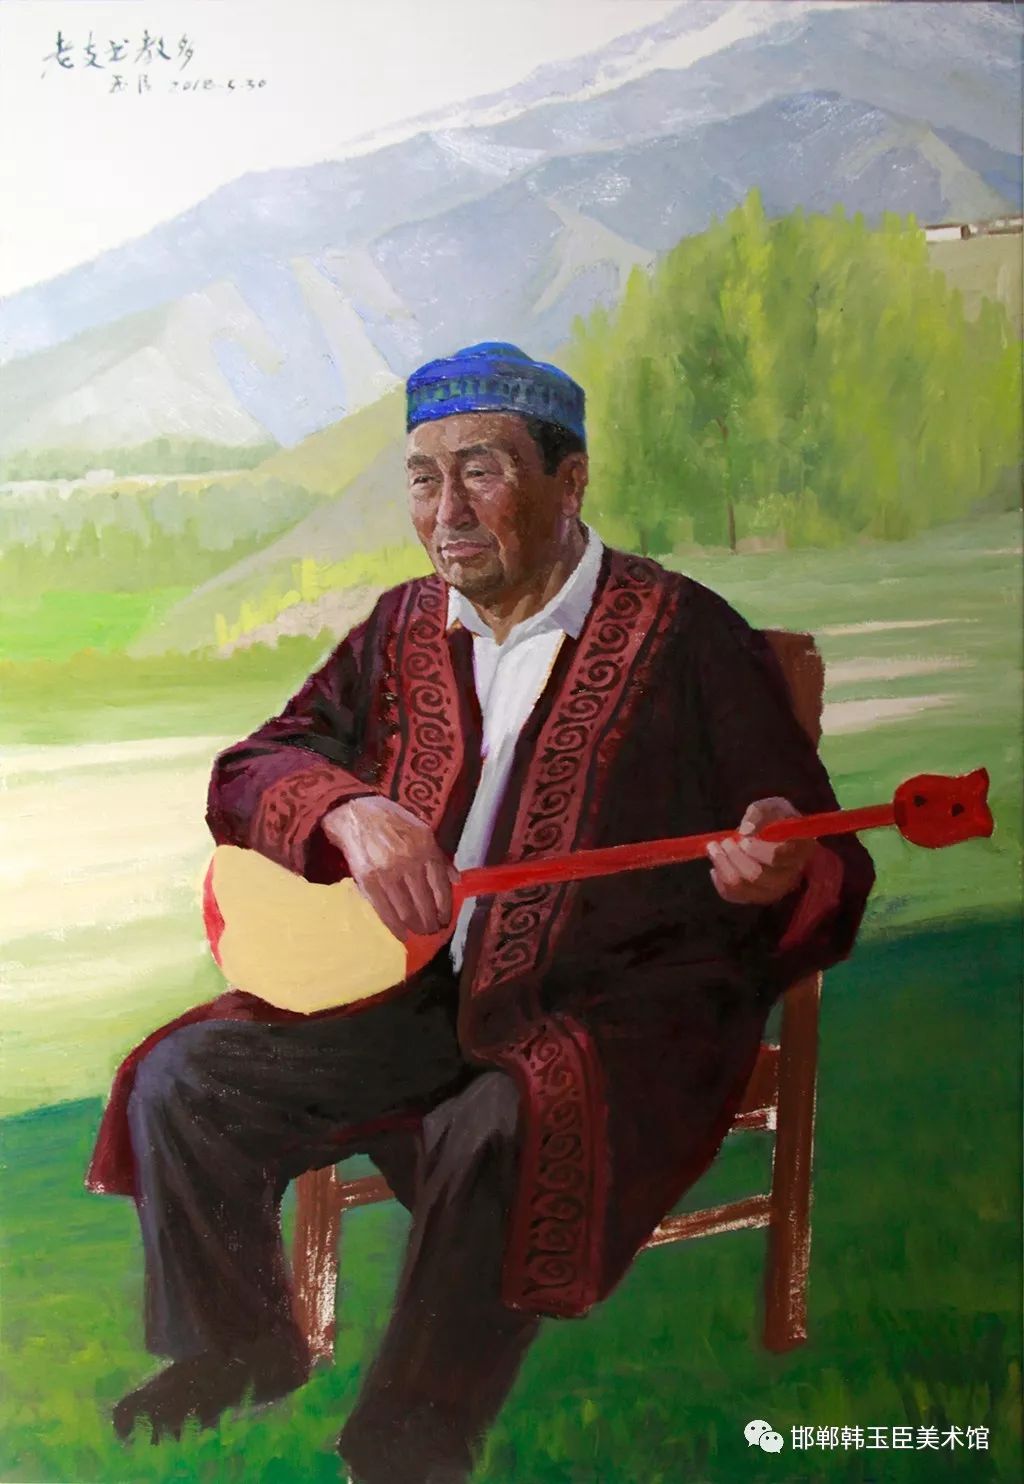 韩玉臣的新疆写生作品让我们看到了纯洁,热情的维吾尔族和哈萨克族